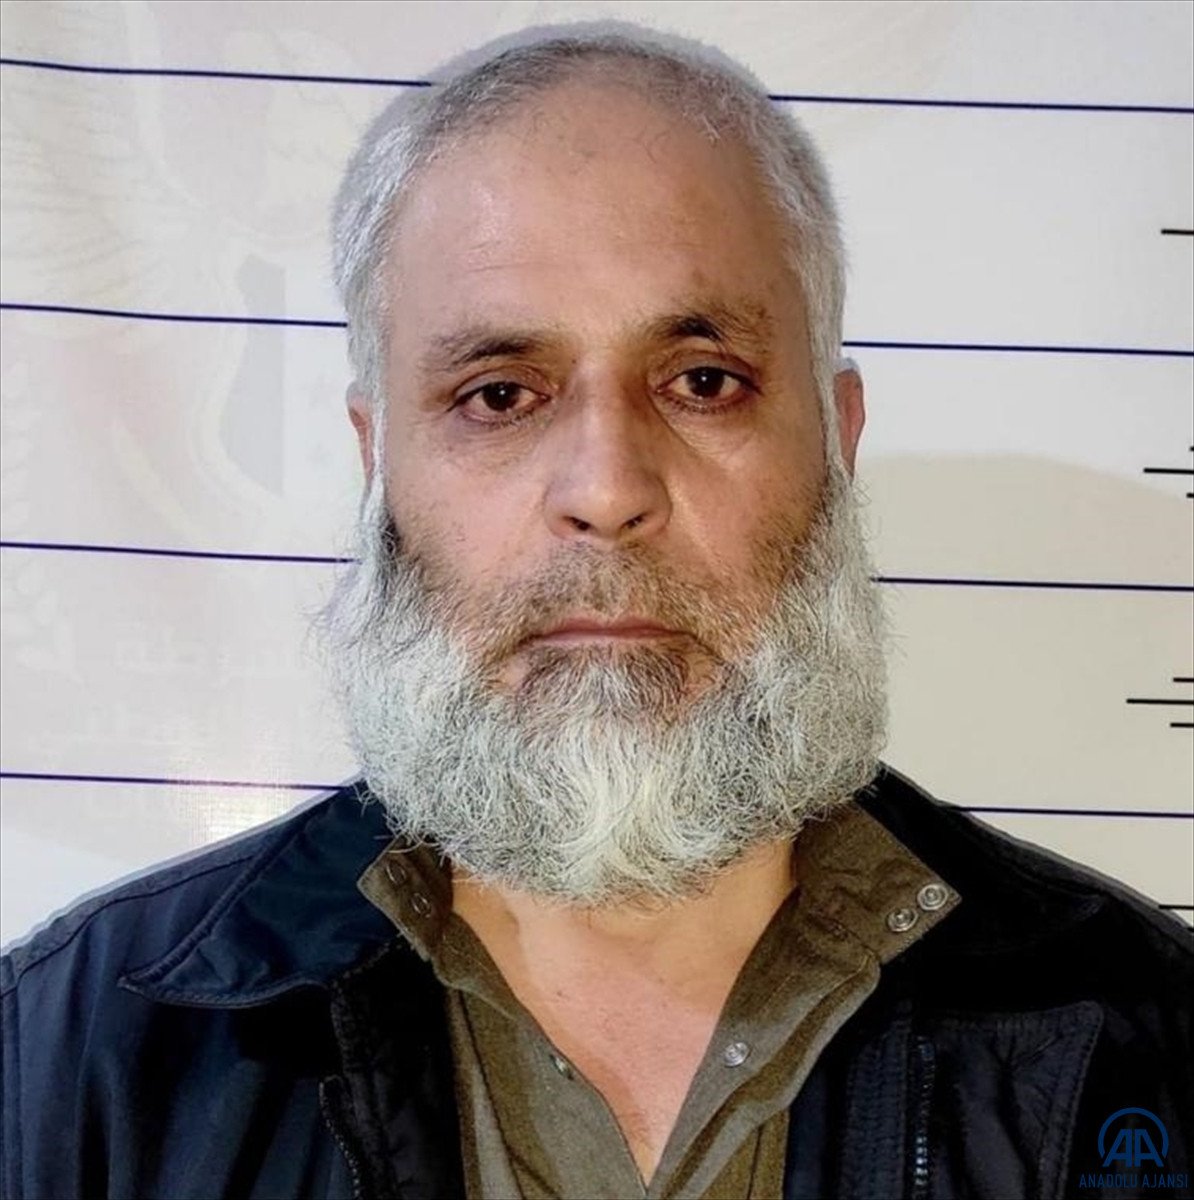 El Bab da 9 DEAŞ lı terörist yakalandı #4